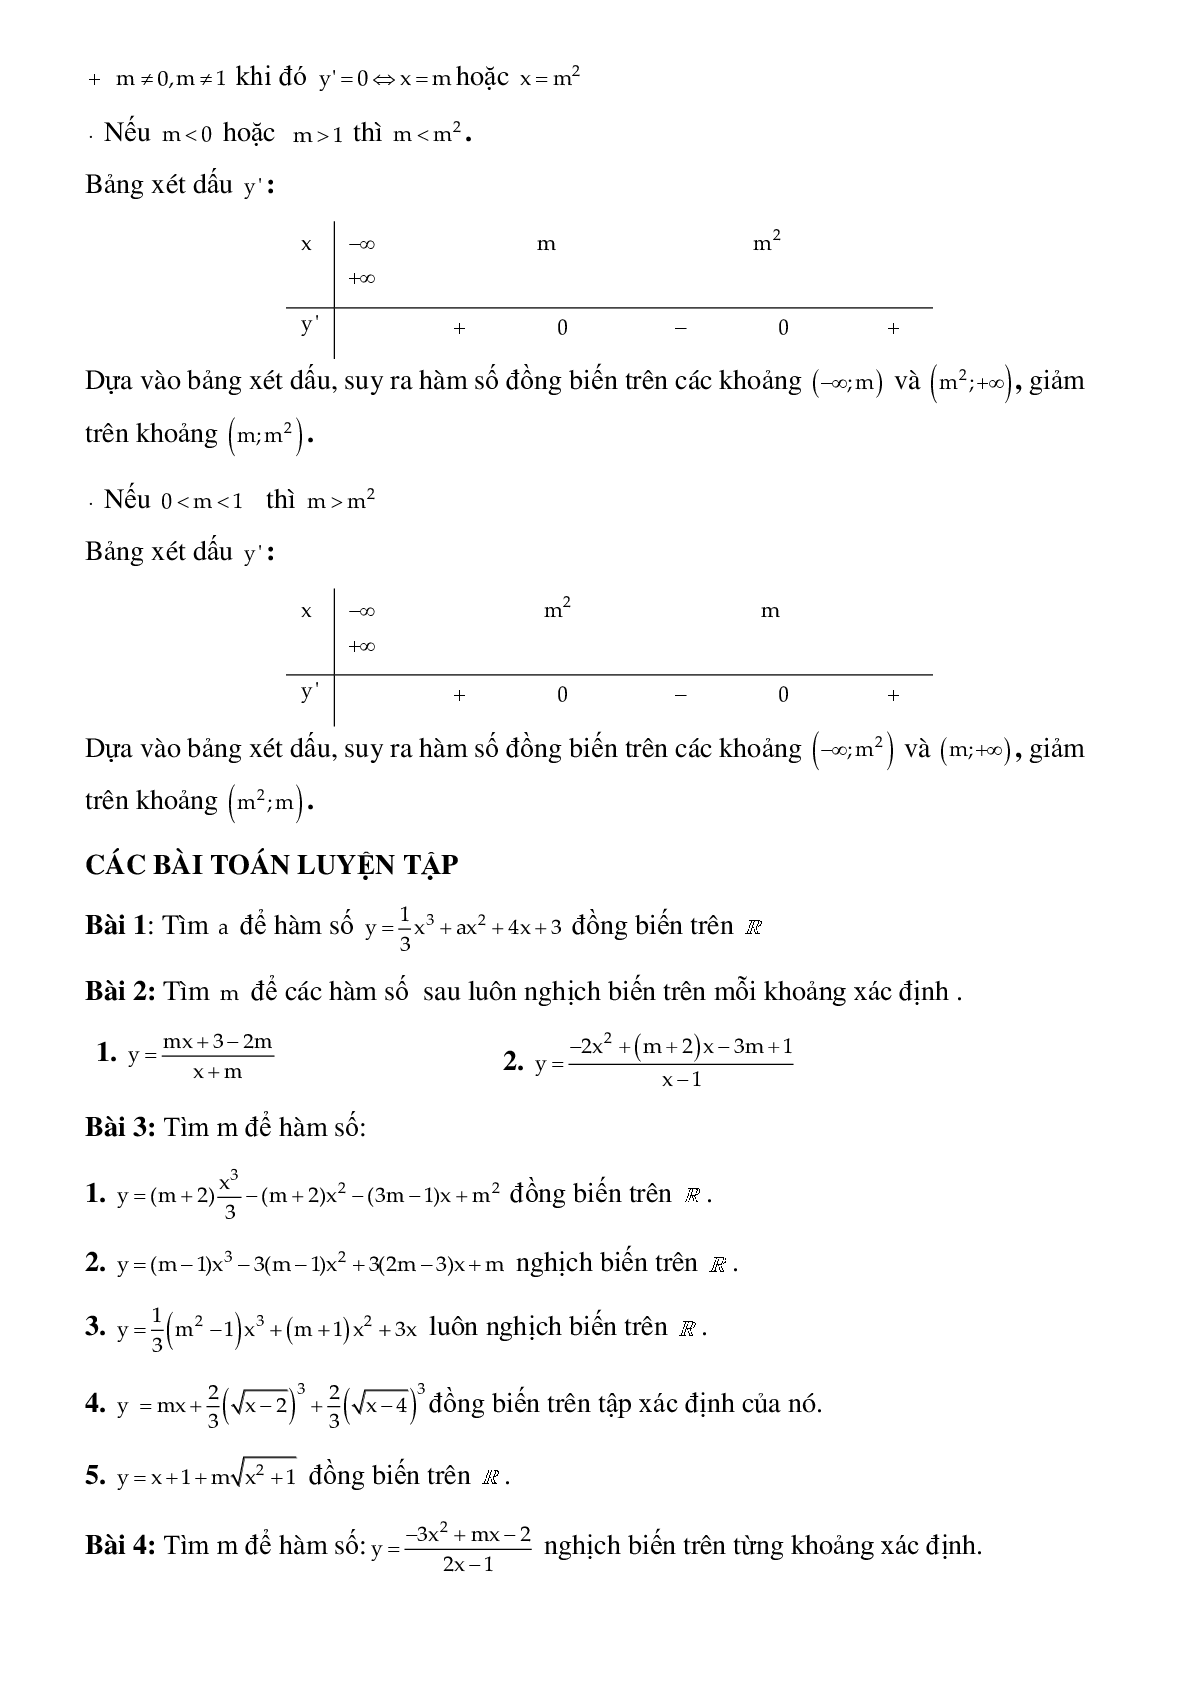 Dạng bài tập Tìm tham số m để hàm số đơn điệu trên tập xác định (trang 3)